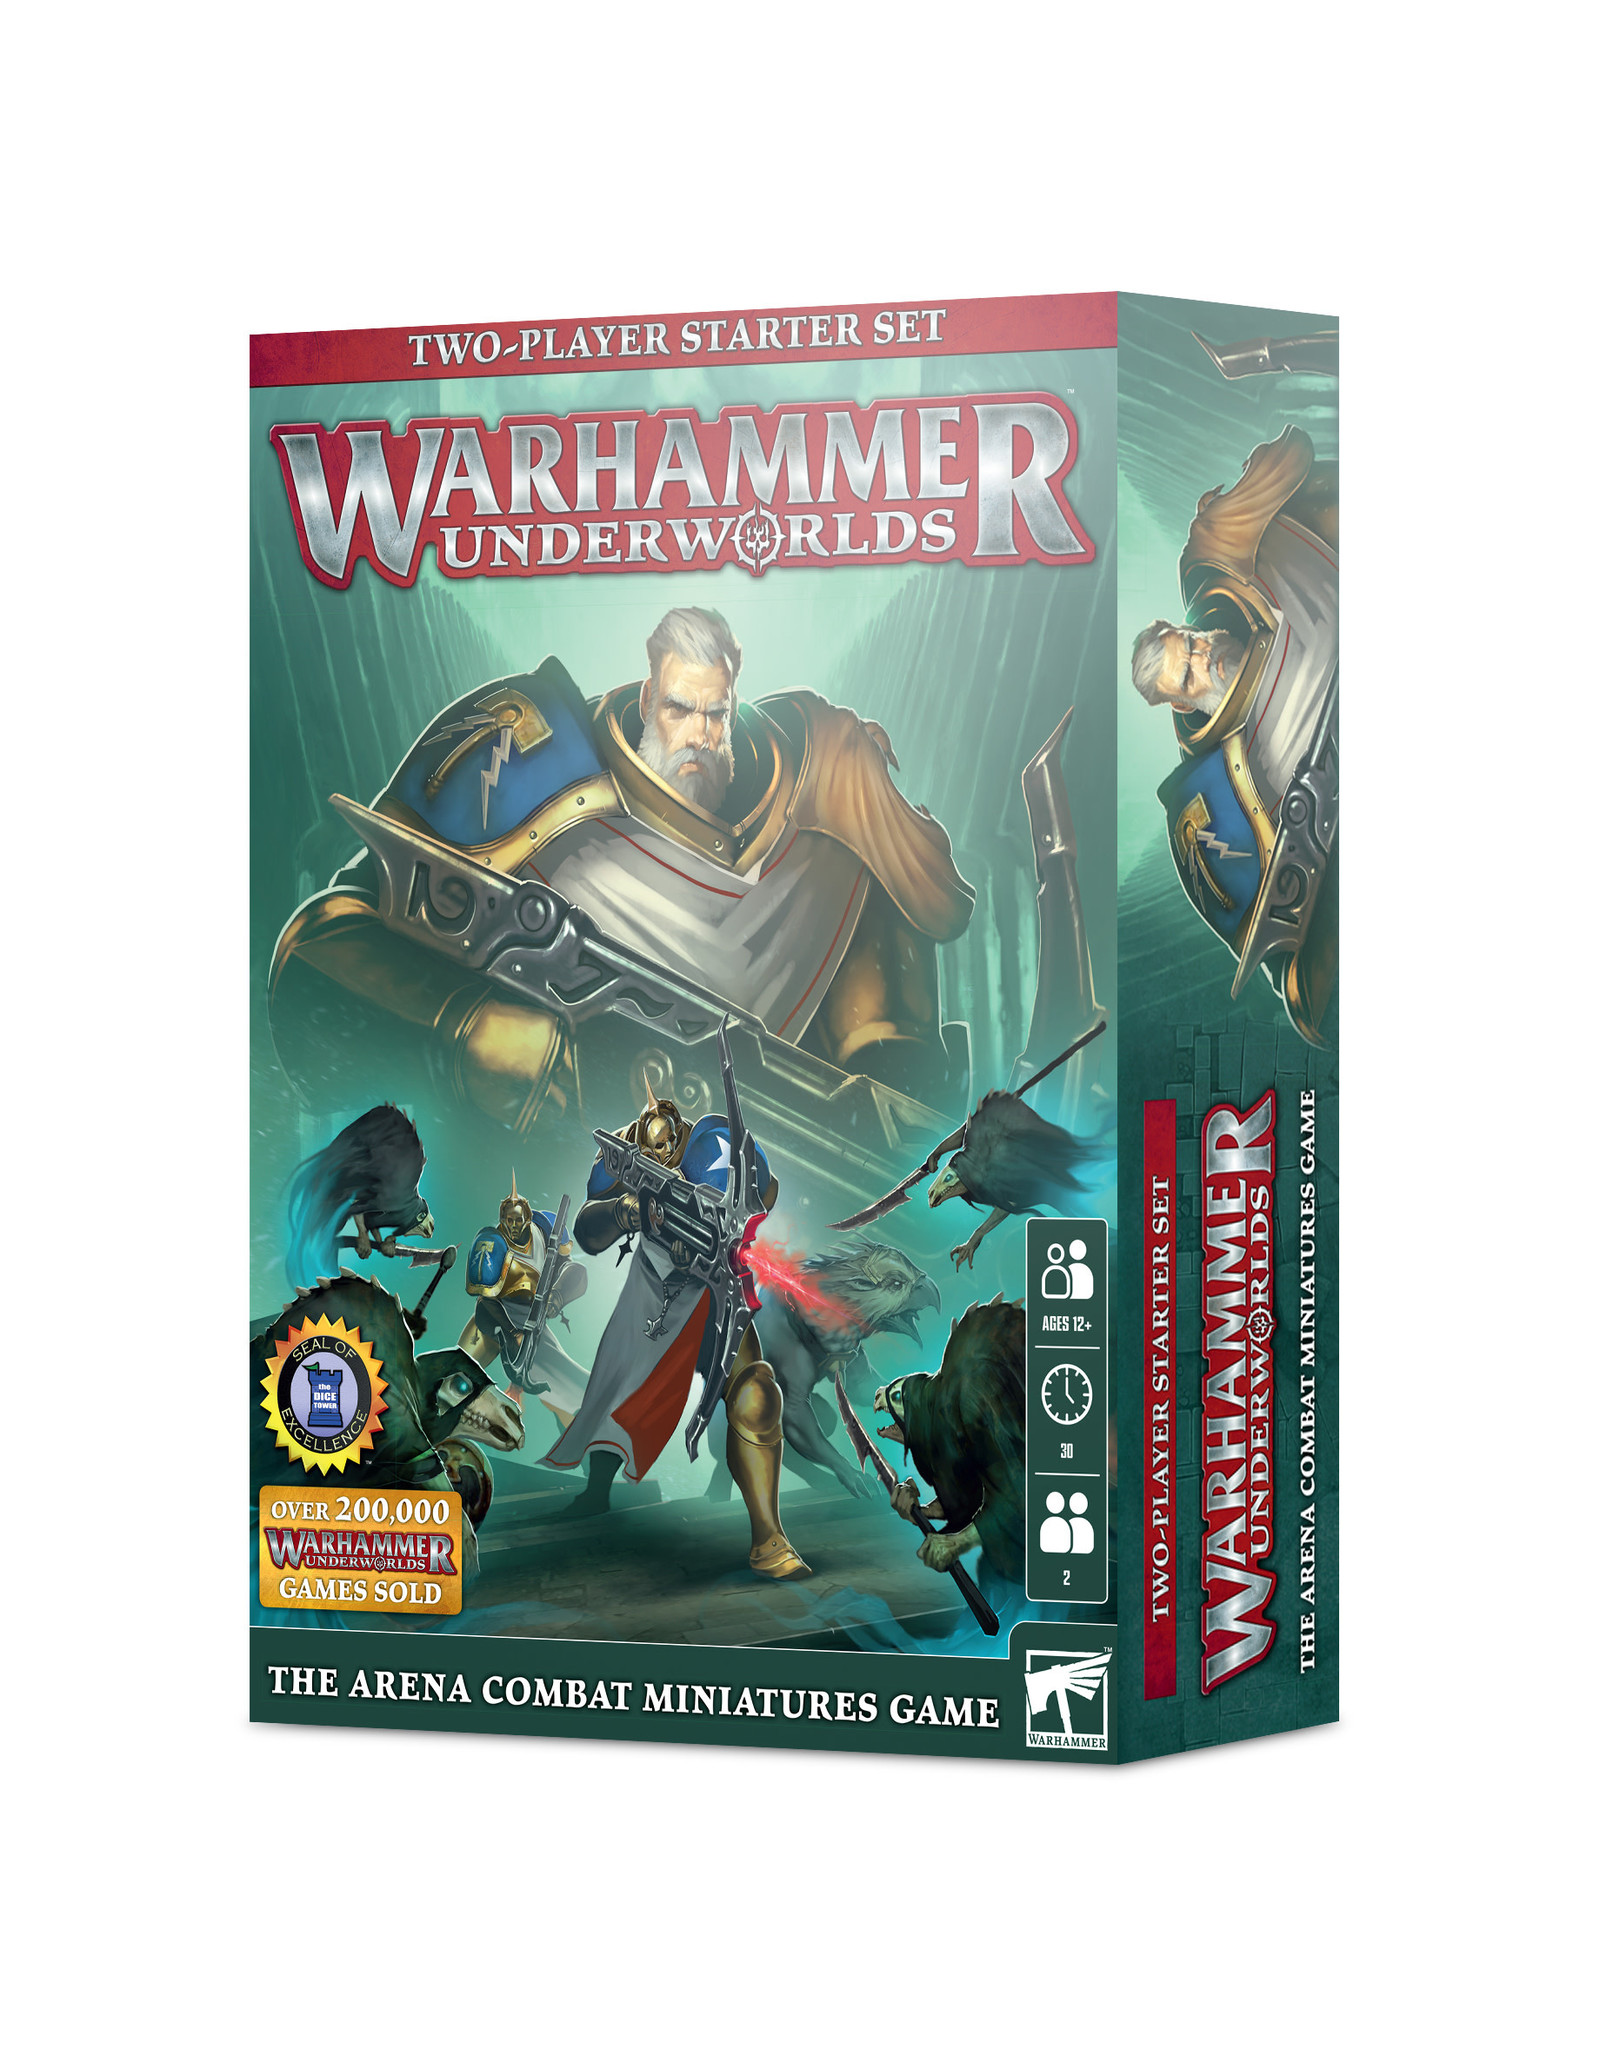 Warhammer Warhammer Underworlds The Arena Combat Miniatures Game  - Starter set